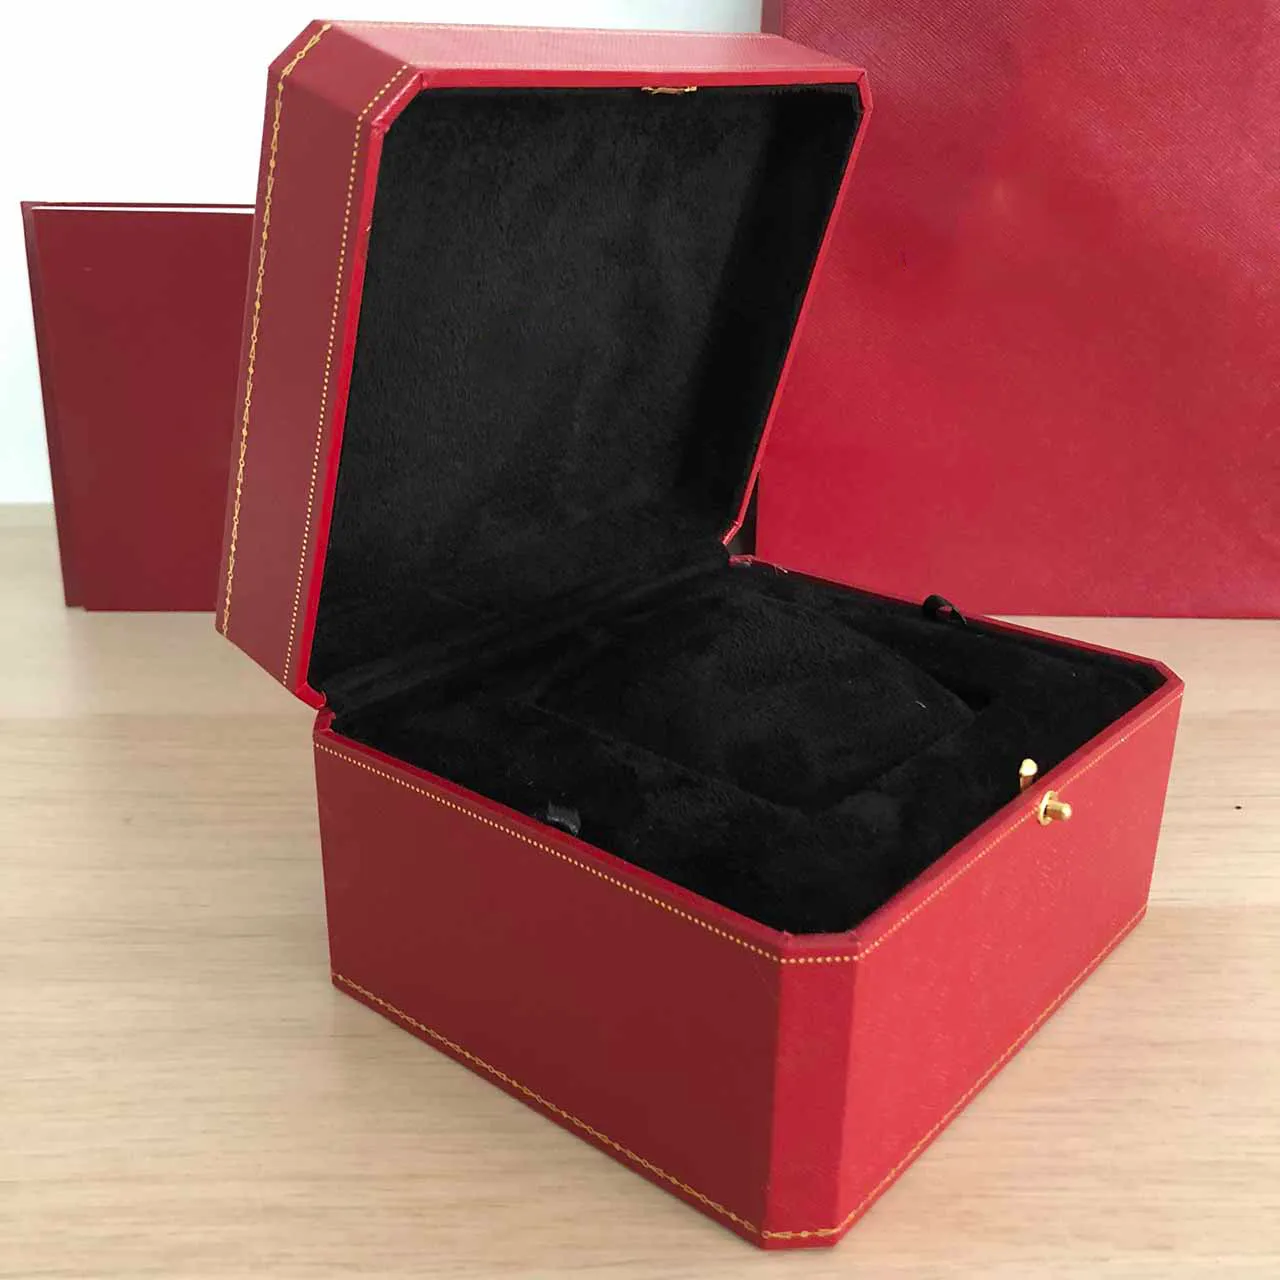 Varios relojes caja coleccionista de lujo calidad de alta gama de madera para folleto tarjeta etiqueta archivo bolsa hombres reloj cajas rojas Gift214u